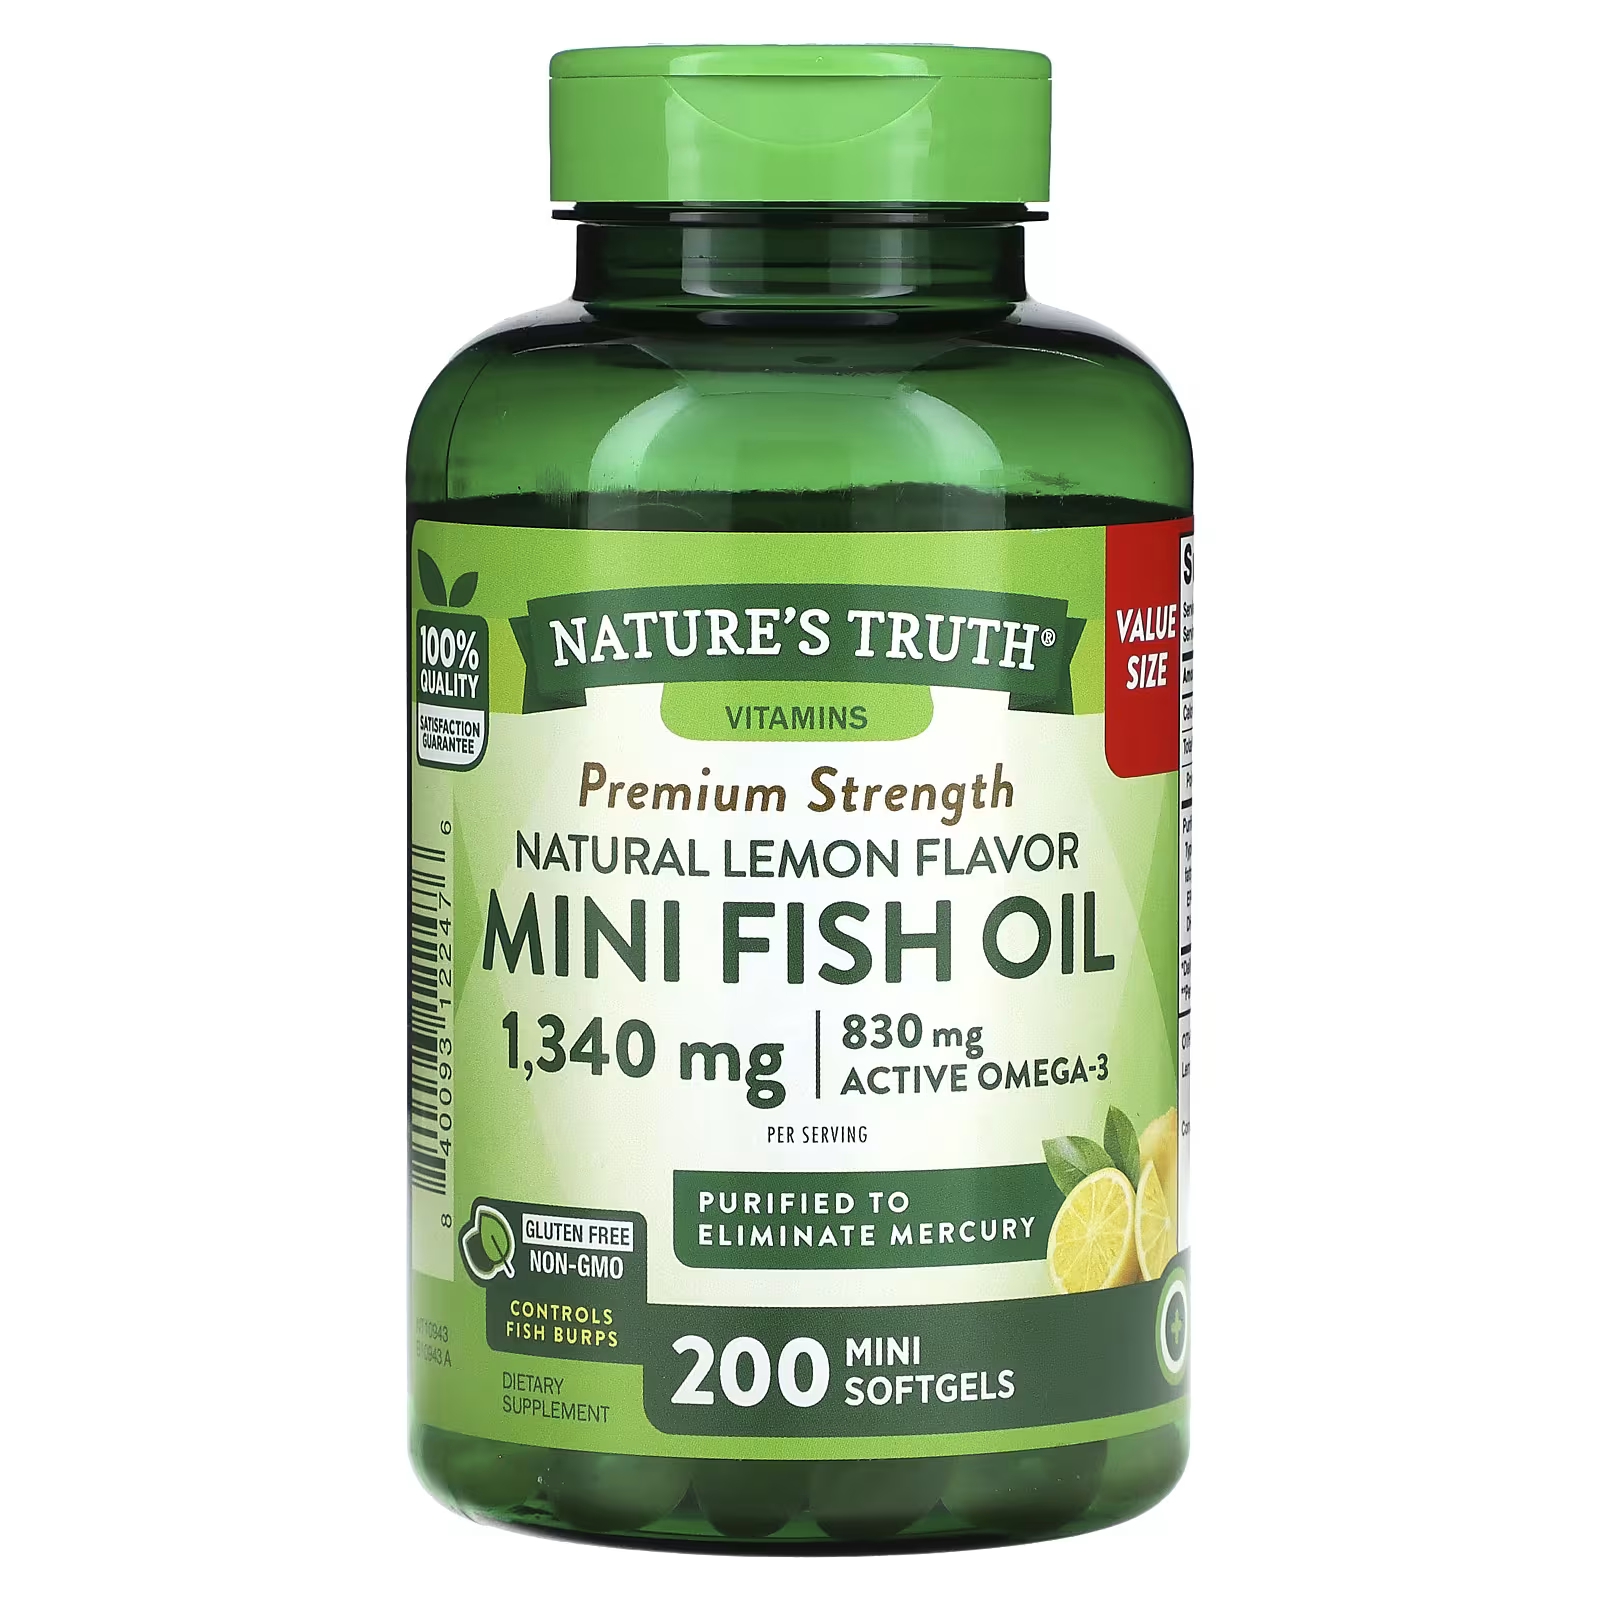 Пищевая добавка Nature's Truth Mini Fish Oil Premium Strength натуральный лимон, 200 мини-желатиновых капсул